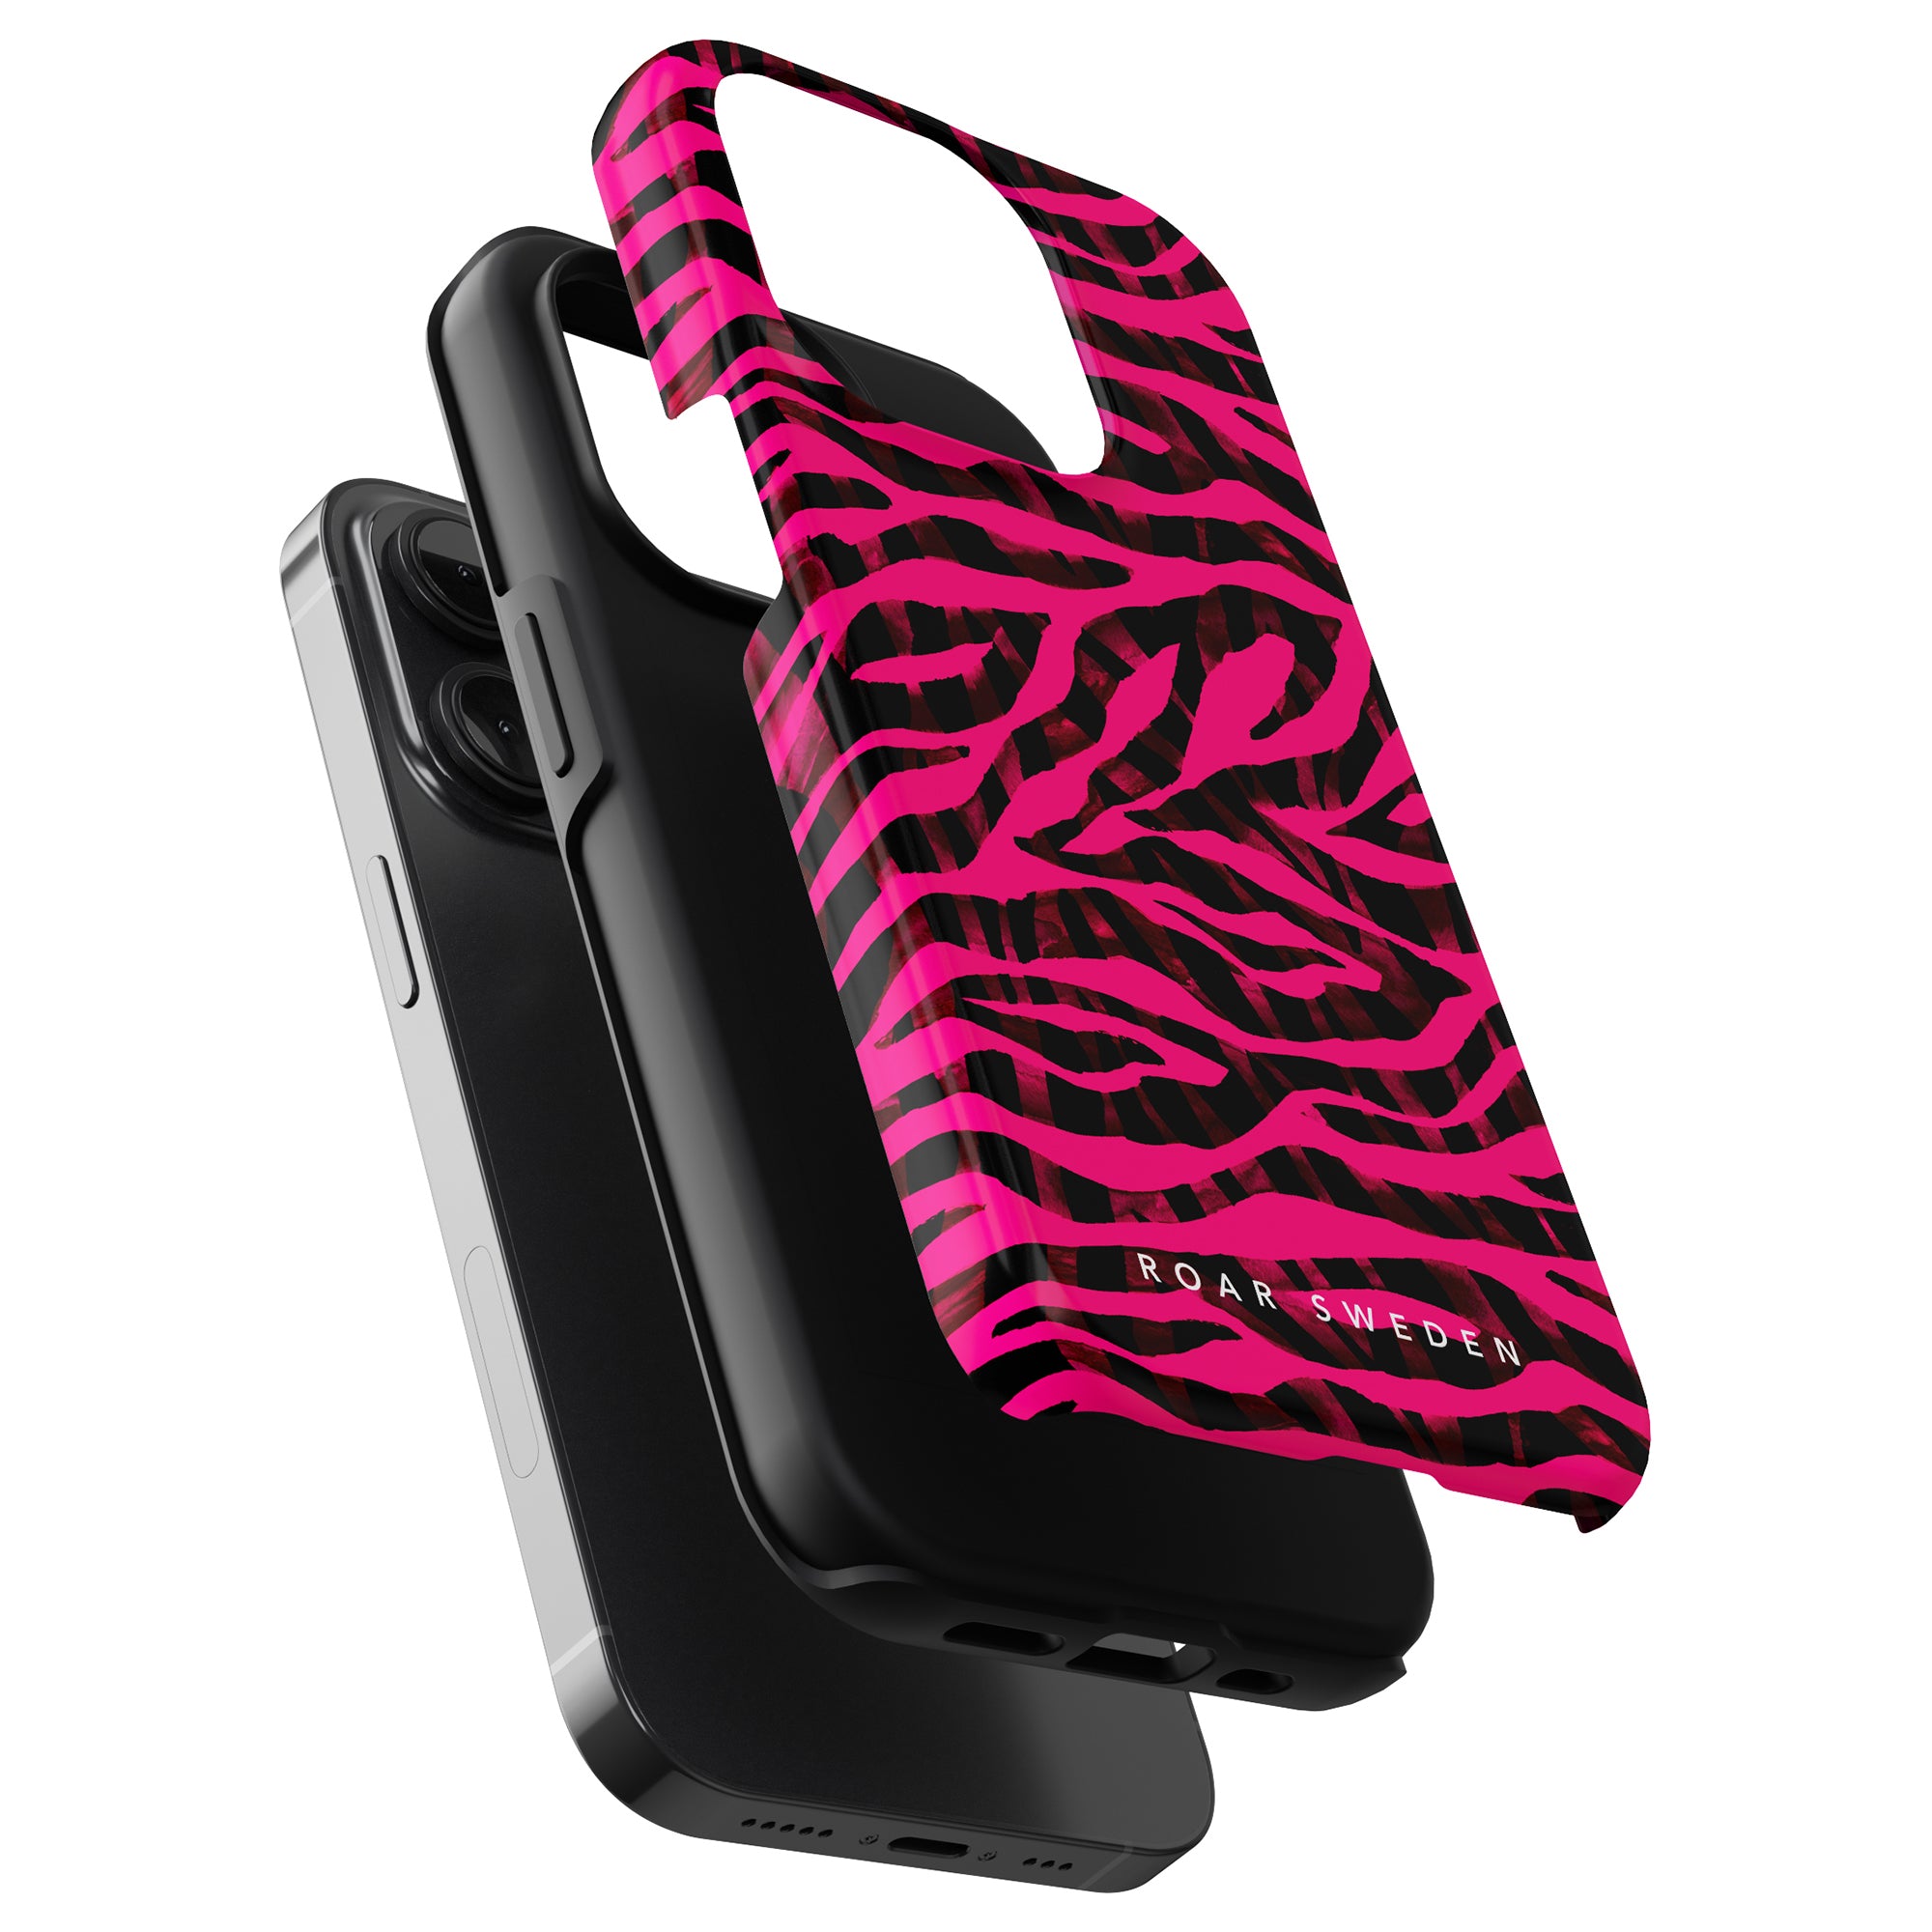 Ett livfullt rosa och intensivt svart fodral med zebratryck designat exklusivt för Pimp Tiger - Tough Case.